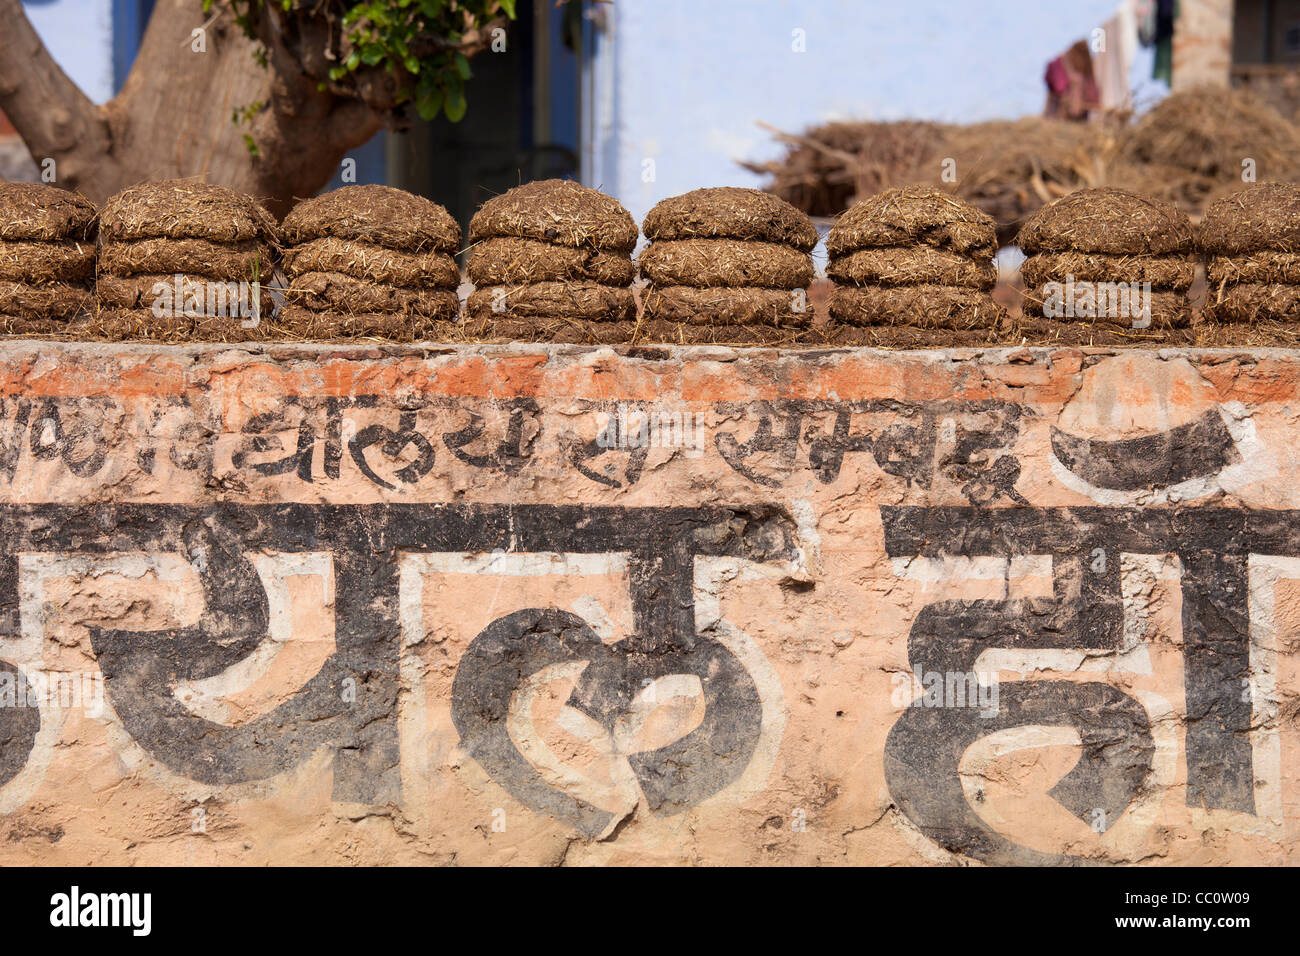 Villaggio indiano home con secchi sterco di vacca per il carburante in Sawai Madhopur nel Rajasthan, India settentrionale Foto Stock